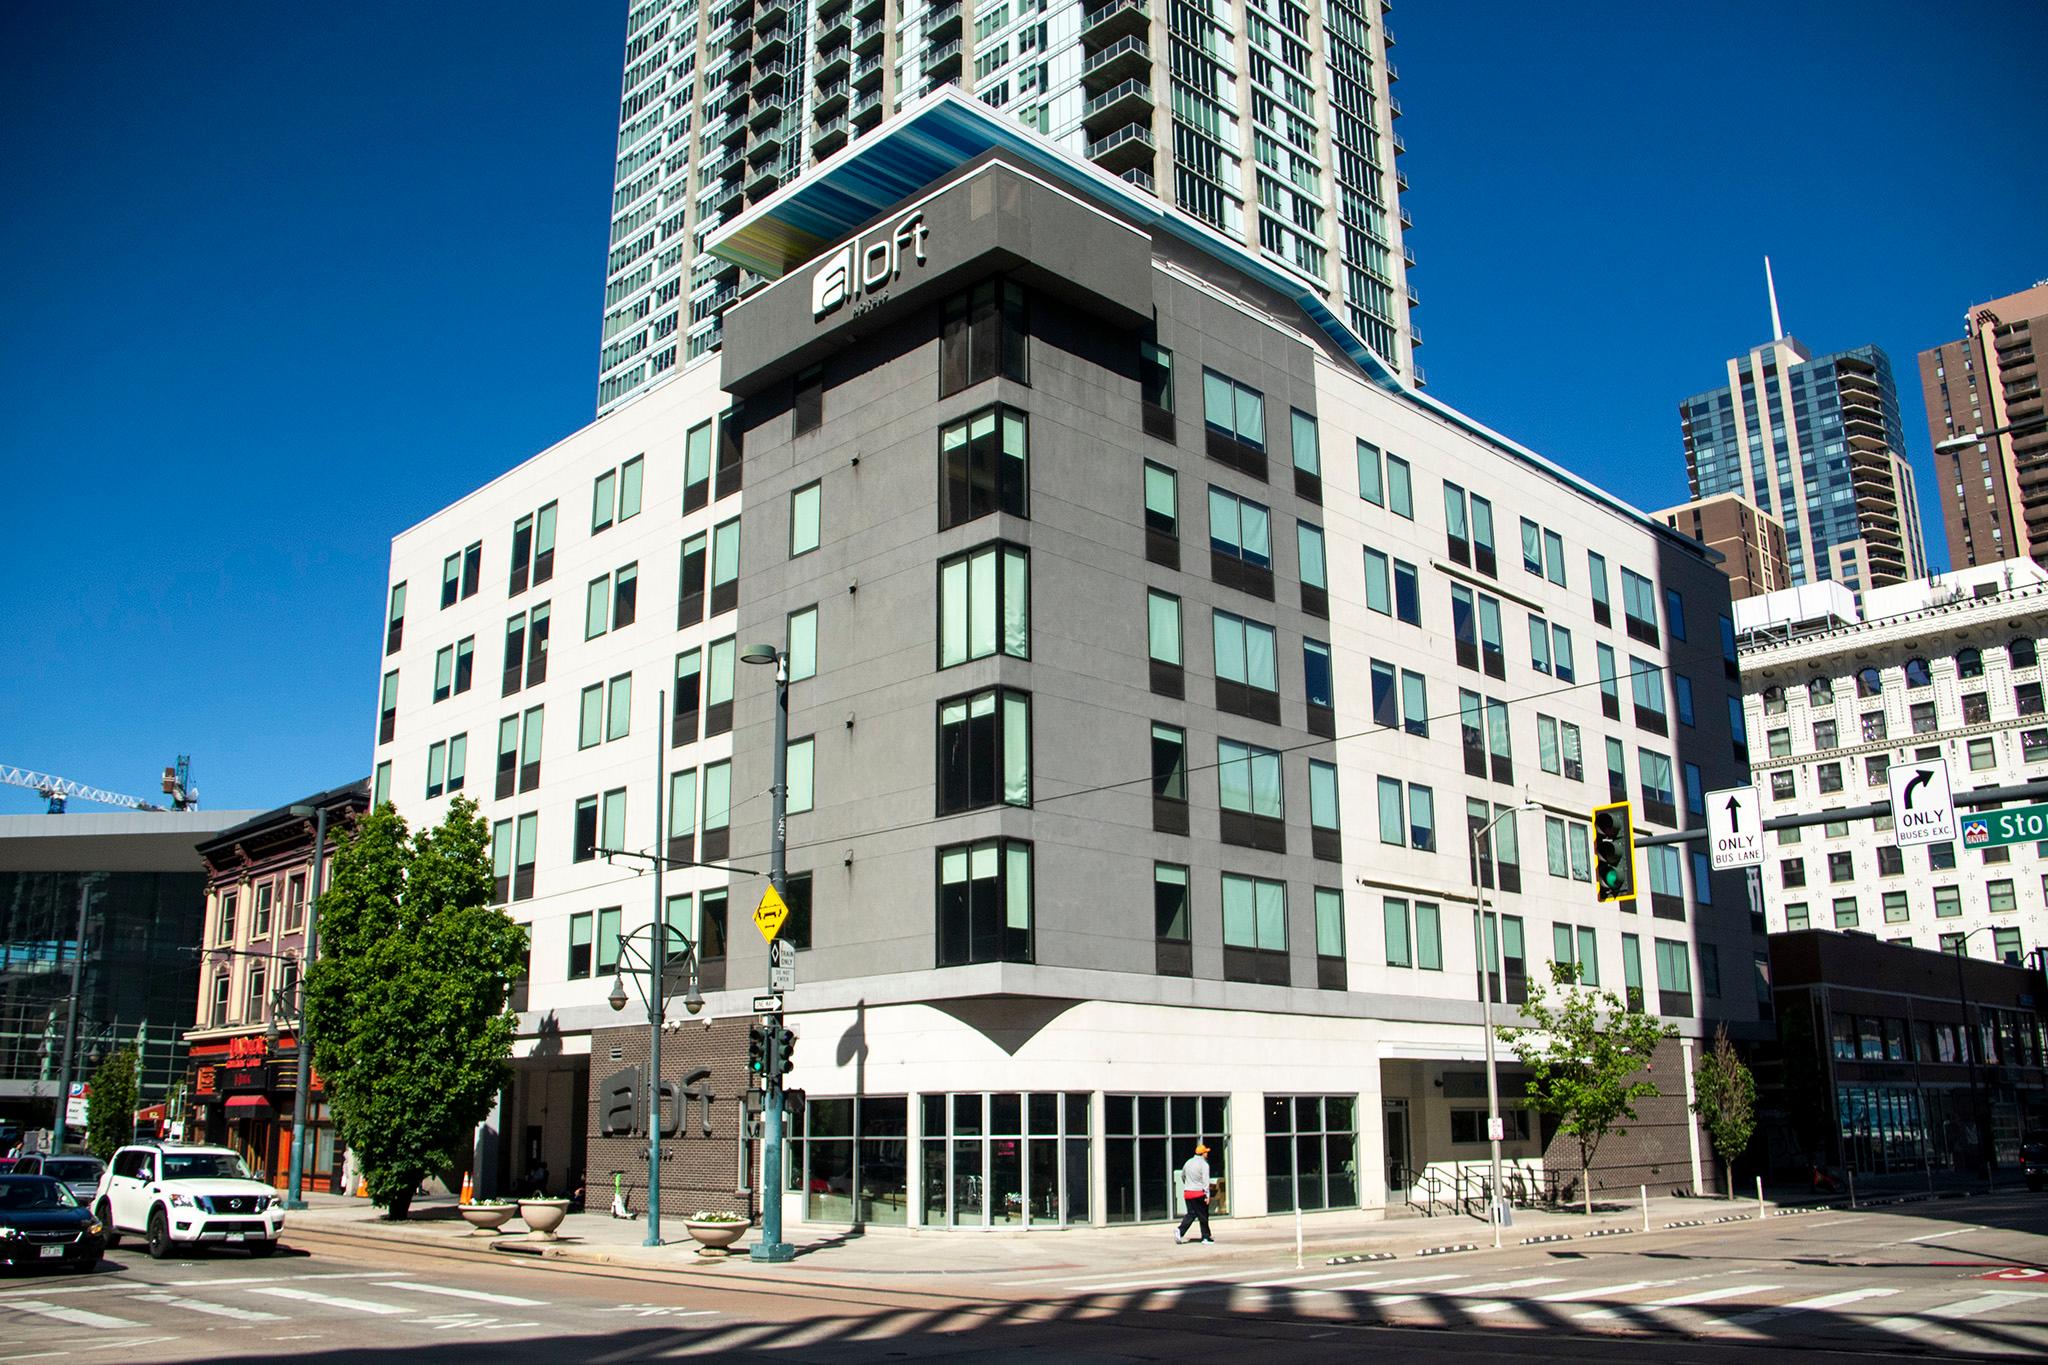 The Aloft hotel at 800 15th St. May 25, 2022.